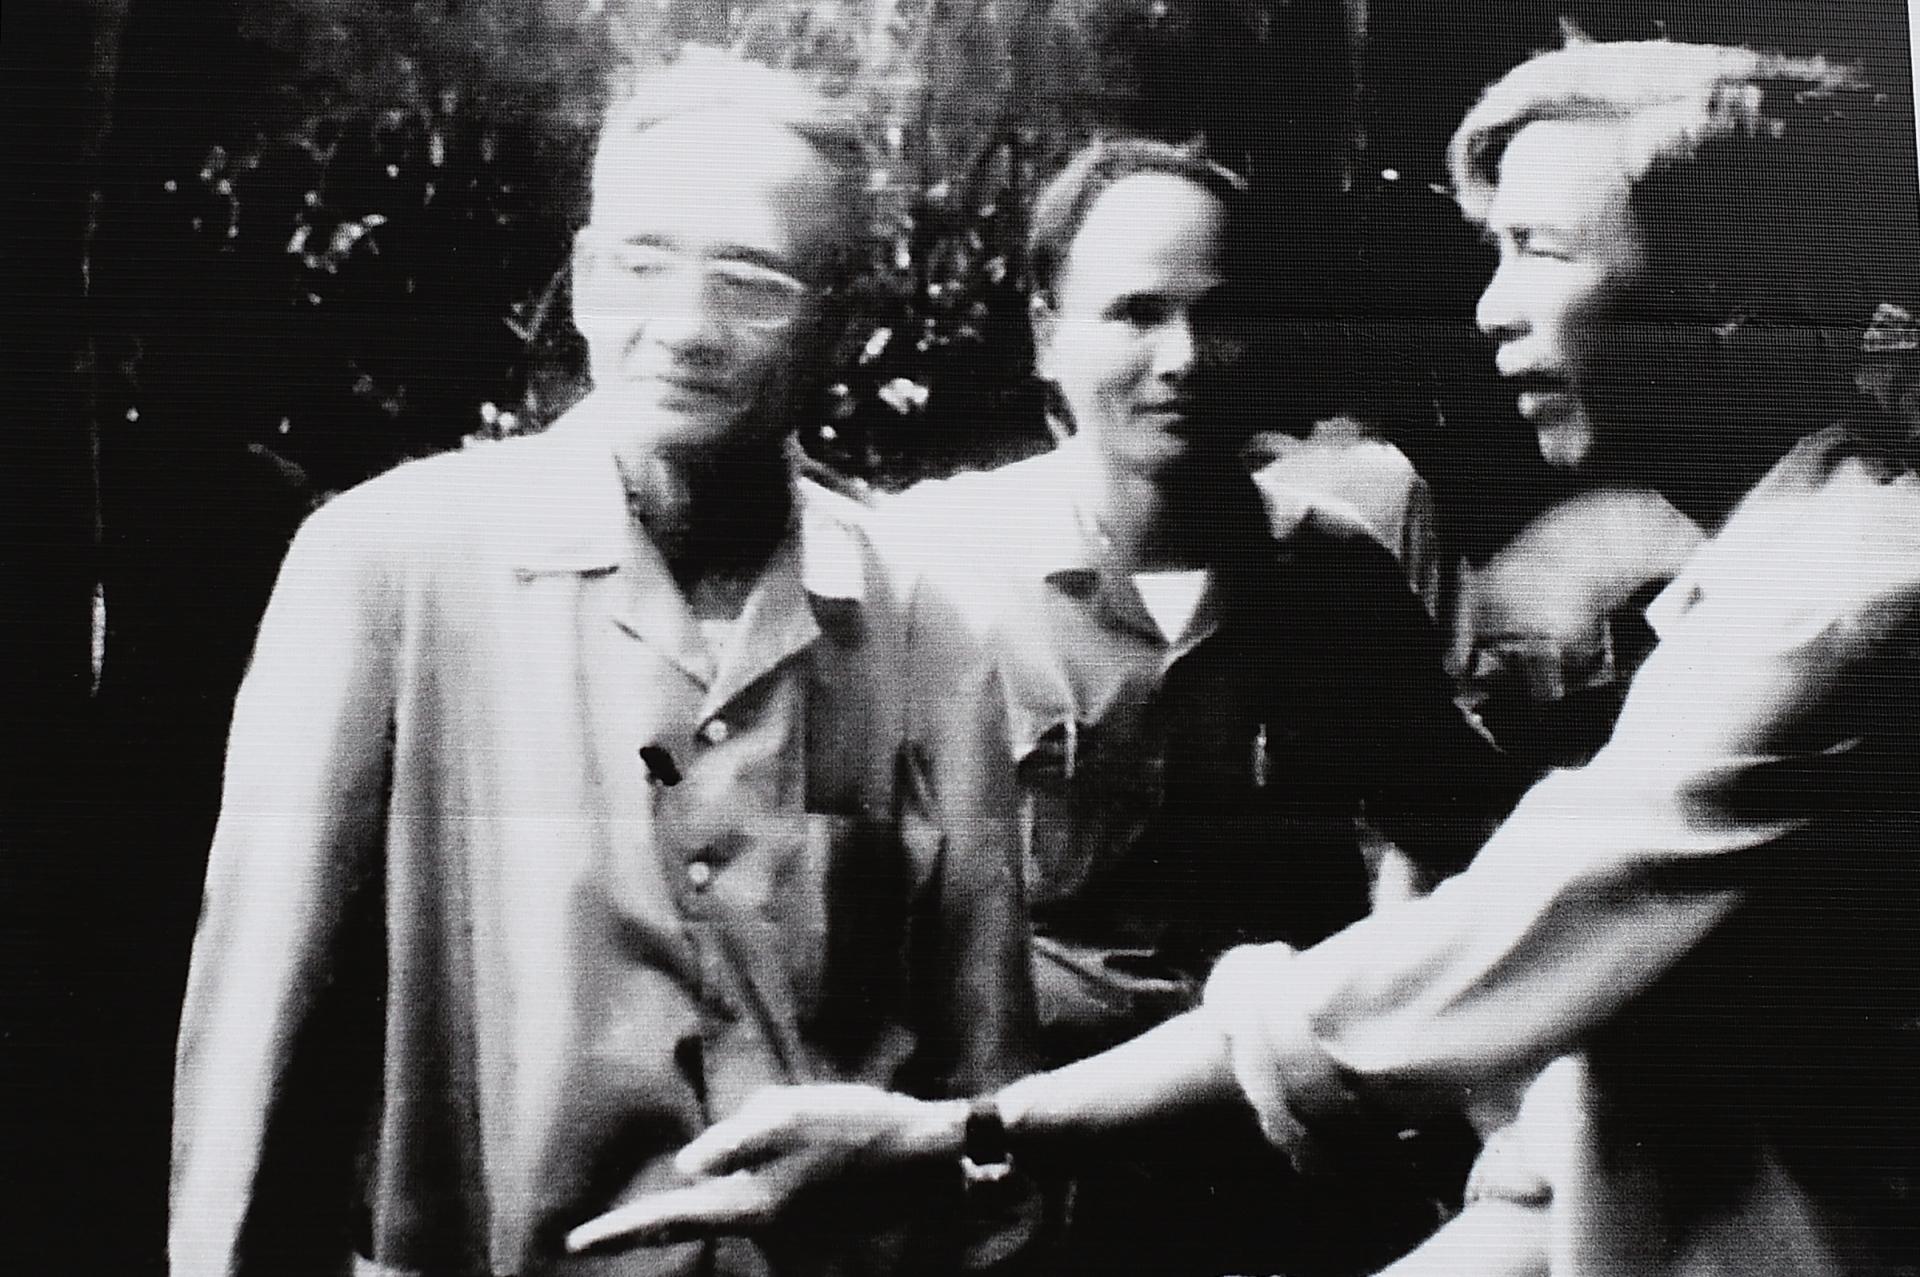 Năm 37 tuổi, ông được điều về Khu Sài Gòn - Gia Định làm Bí thư Khu ủy T.4 (Sài Gòn - Gia Định) từ năm 1959 đến cuối 1970 sau khi đảm nhiệm nhiều chức vụ quan trọng ở miền Nam. Trong ảnh, ông Kiệt (bên phải) lúc này là Bí thư Khu uỷ Sài Gòn - Gia Định, bàn biện pháp chống Chiến tranh đặc biệt của Mỹ năm 1963.